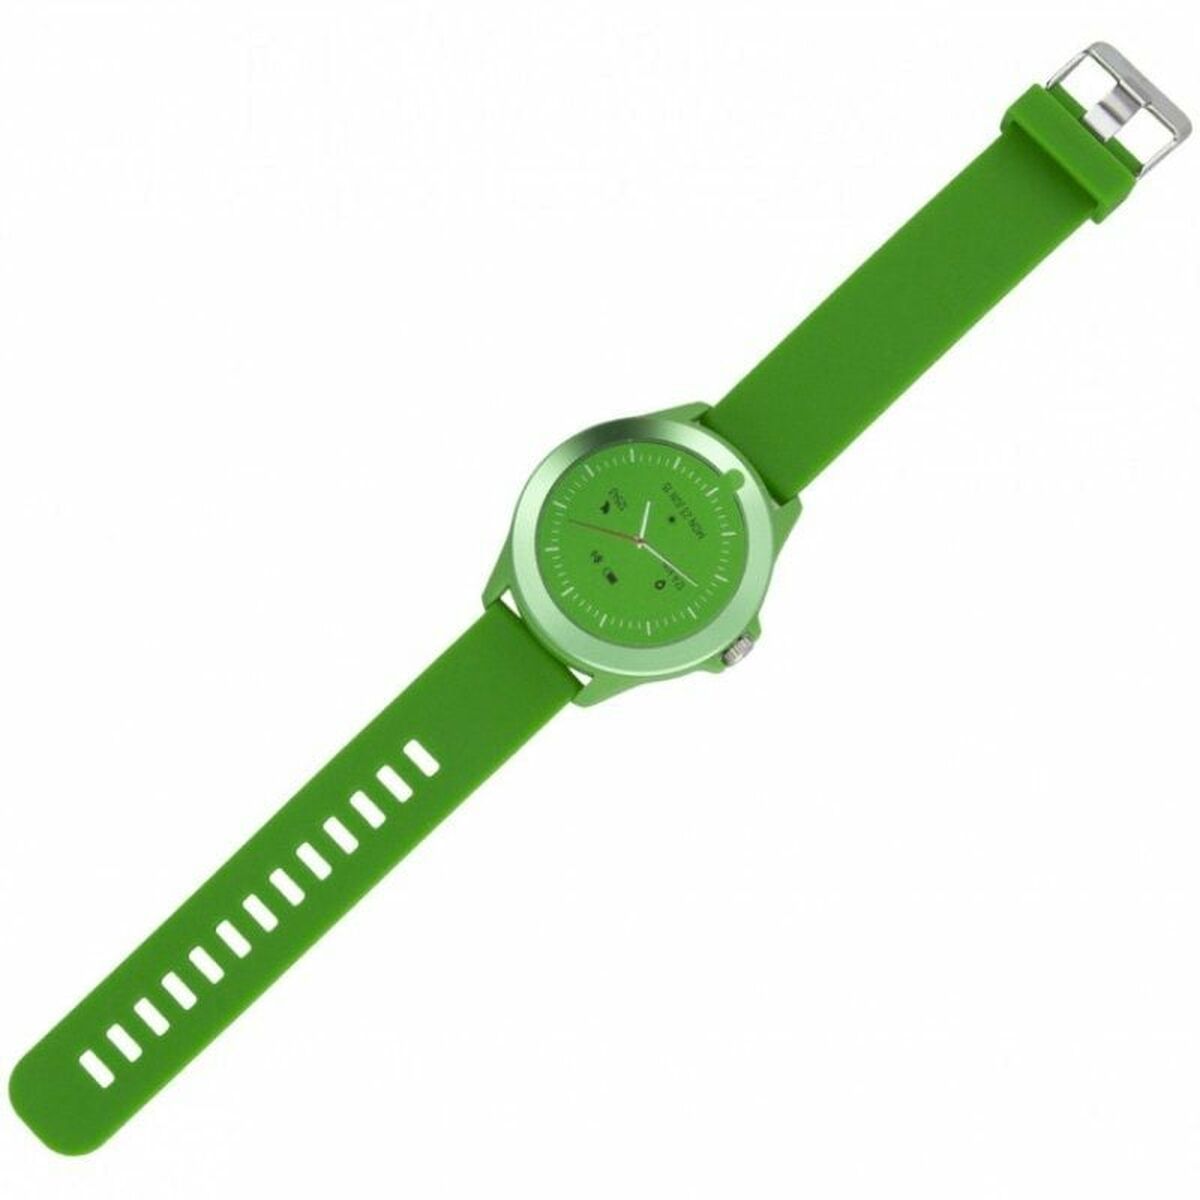 Smartwatch Forever CW-300 grün - CA International  